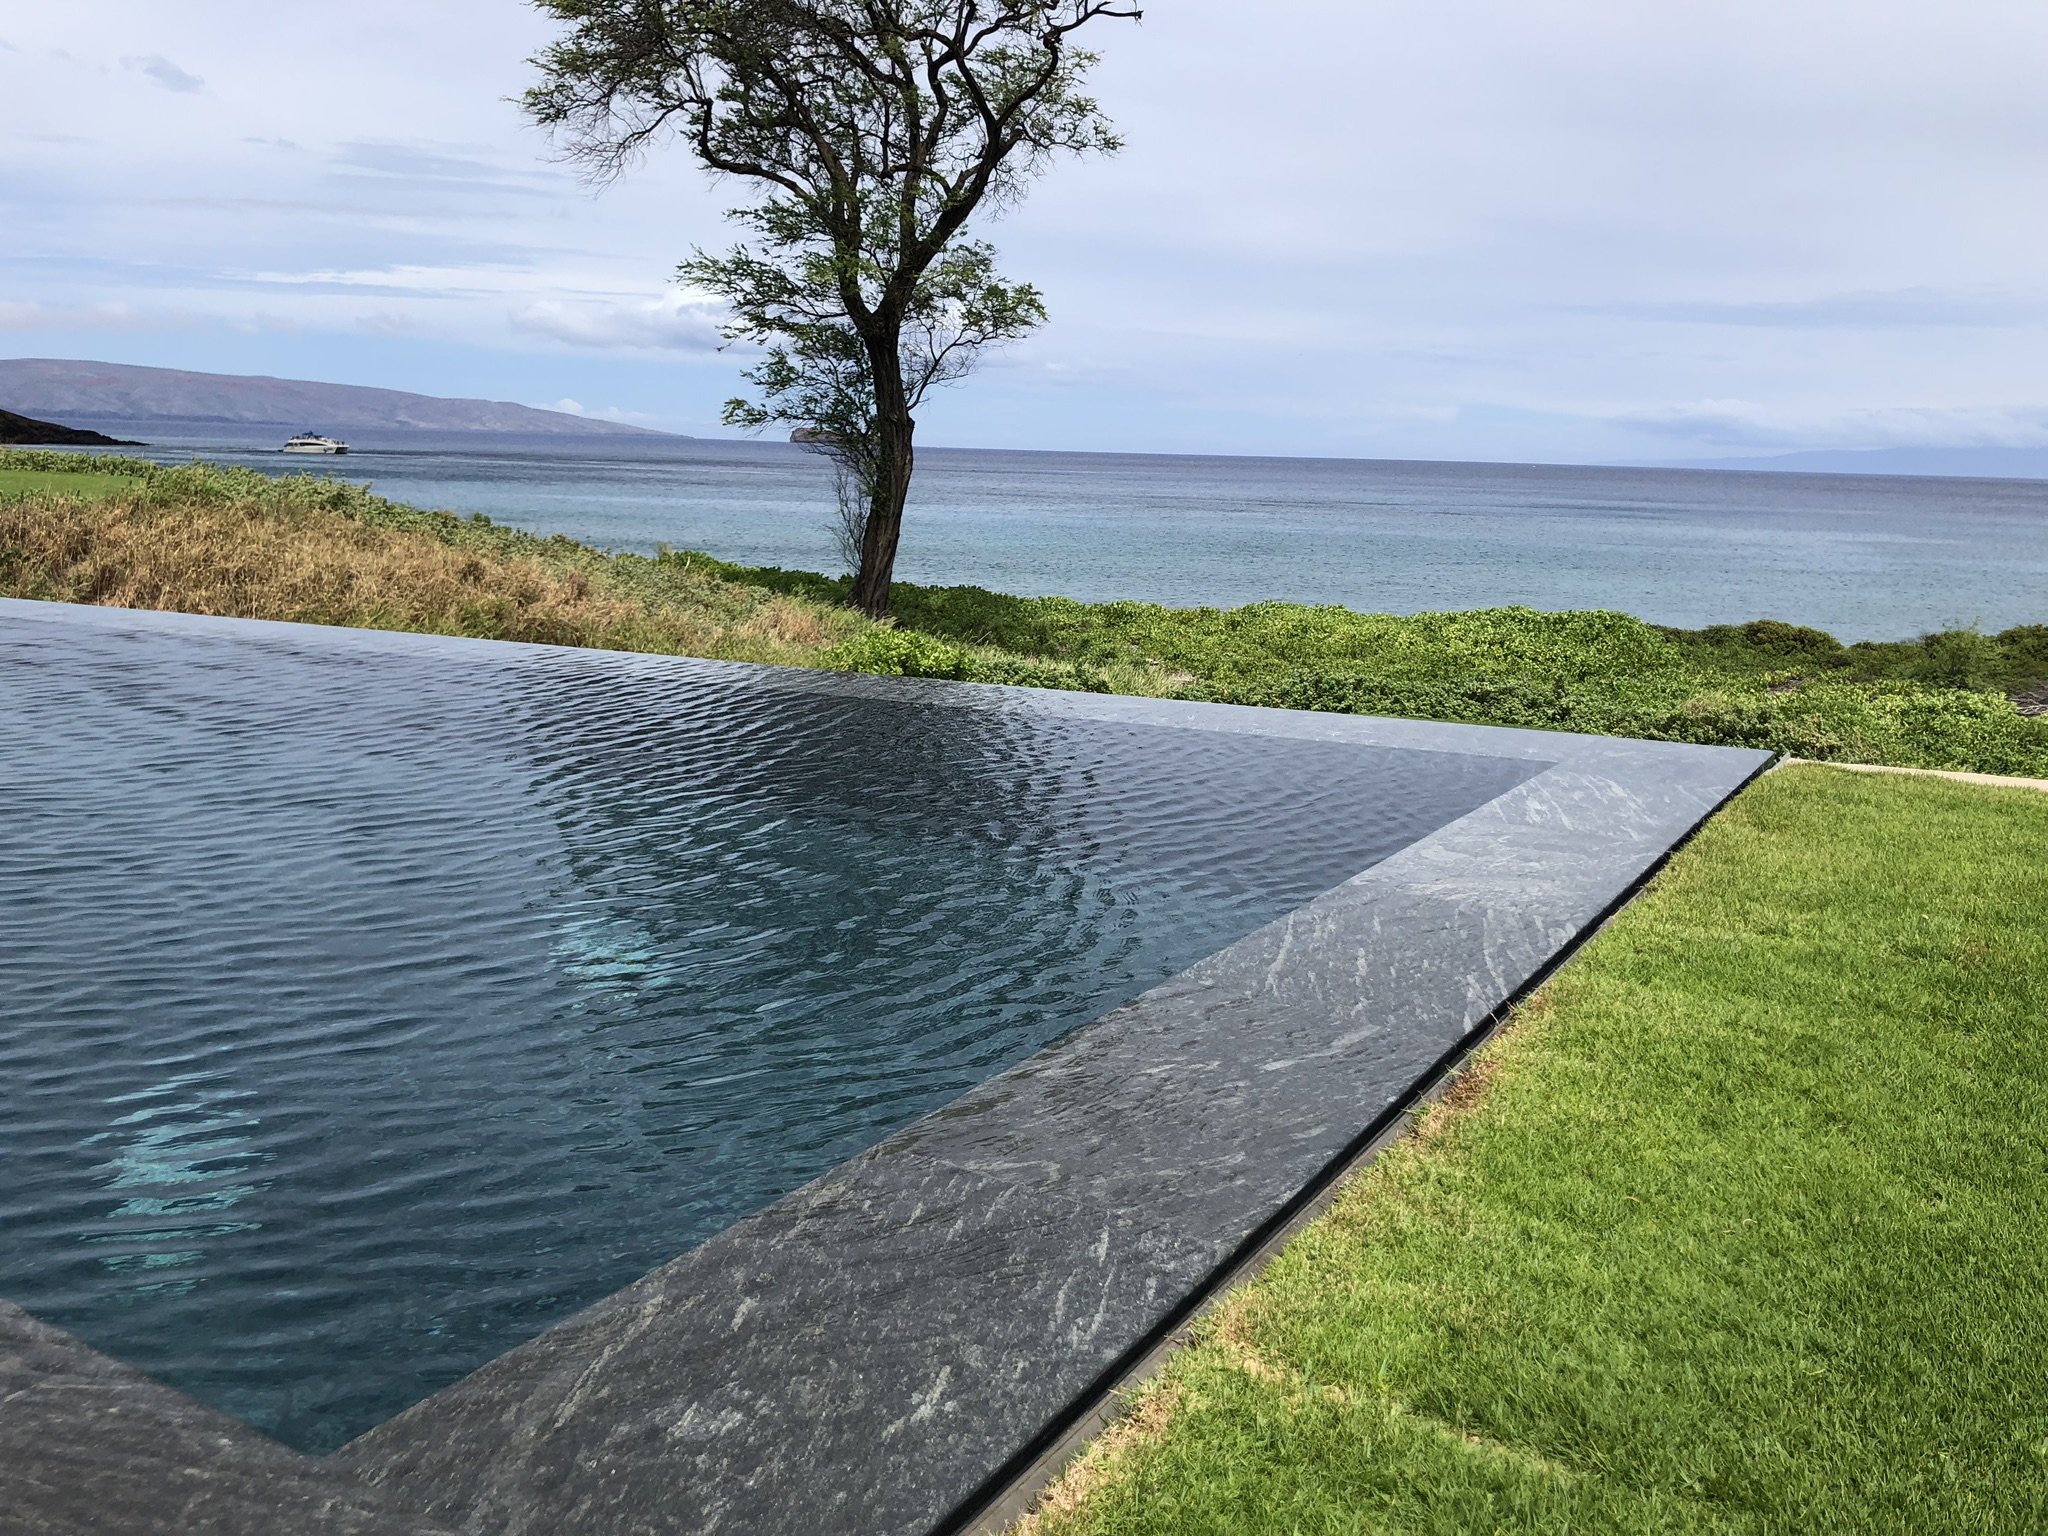 Maui Pool in Cardoso Stone